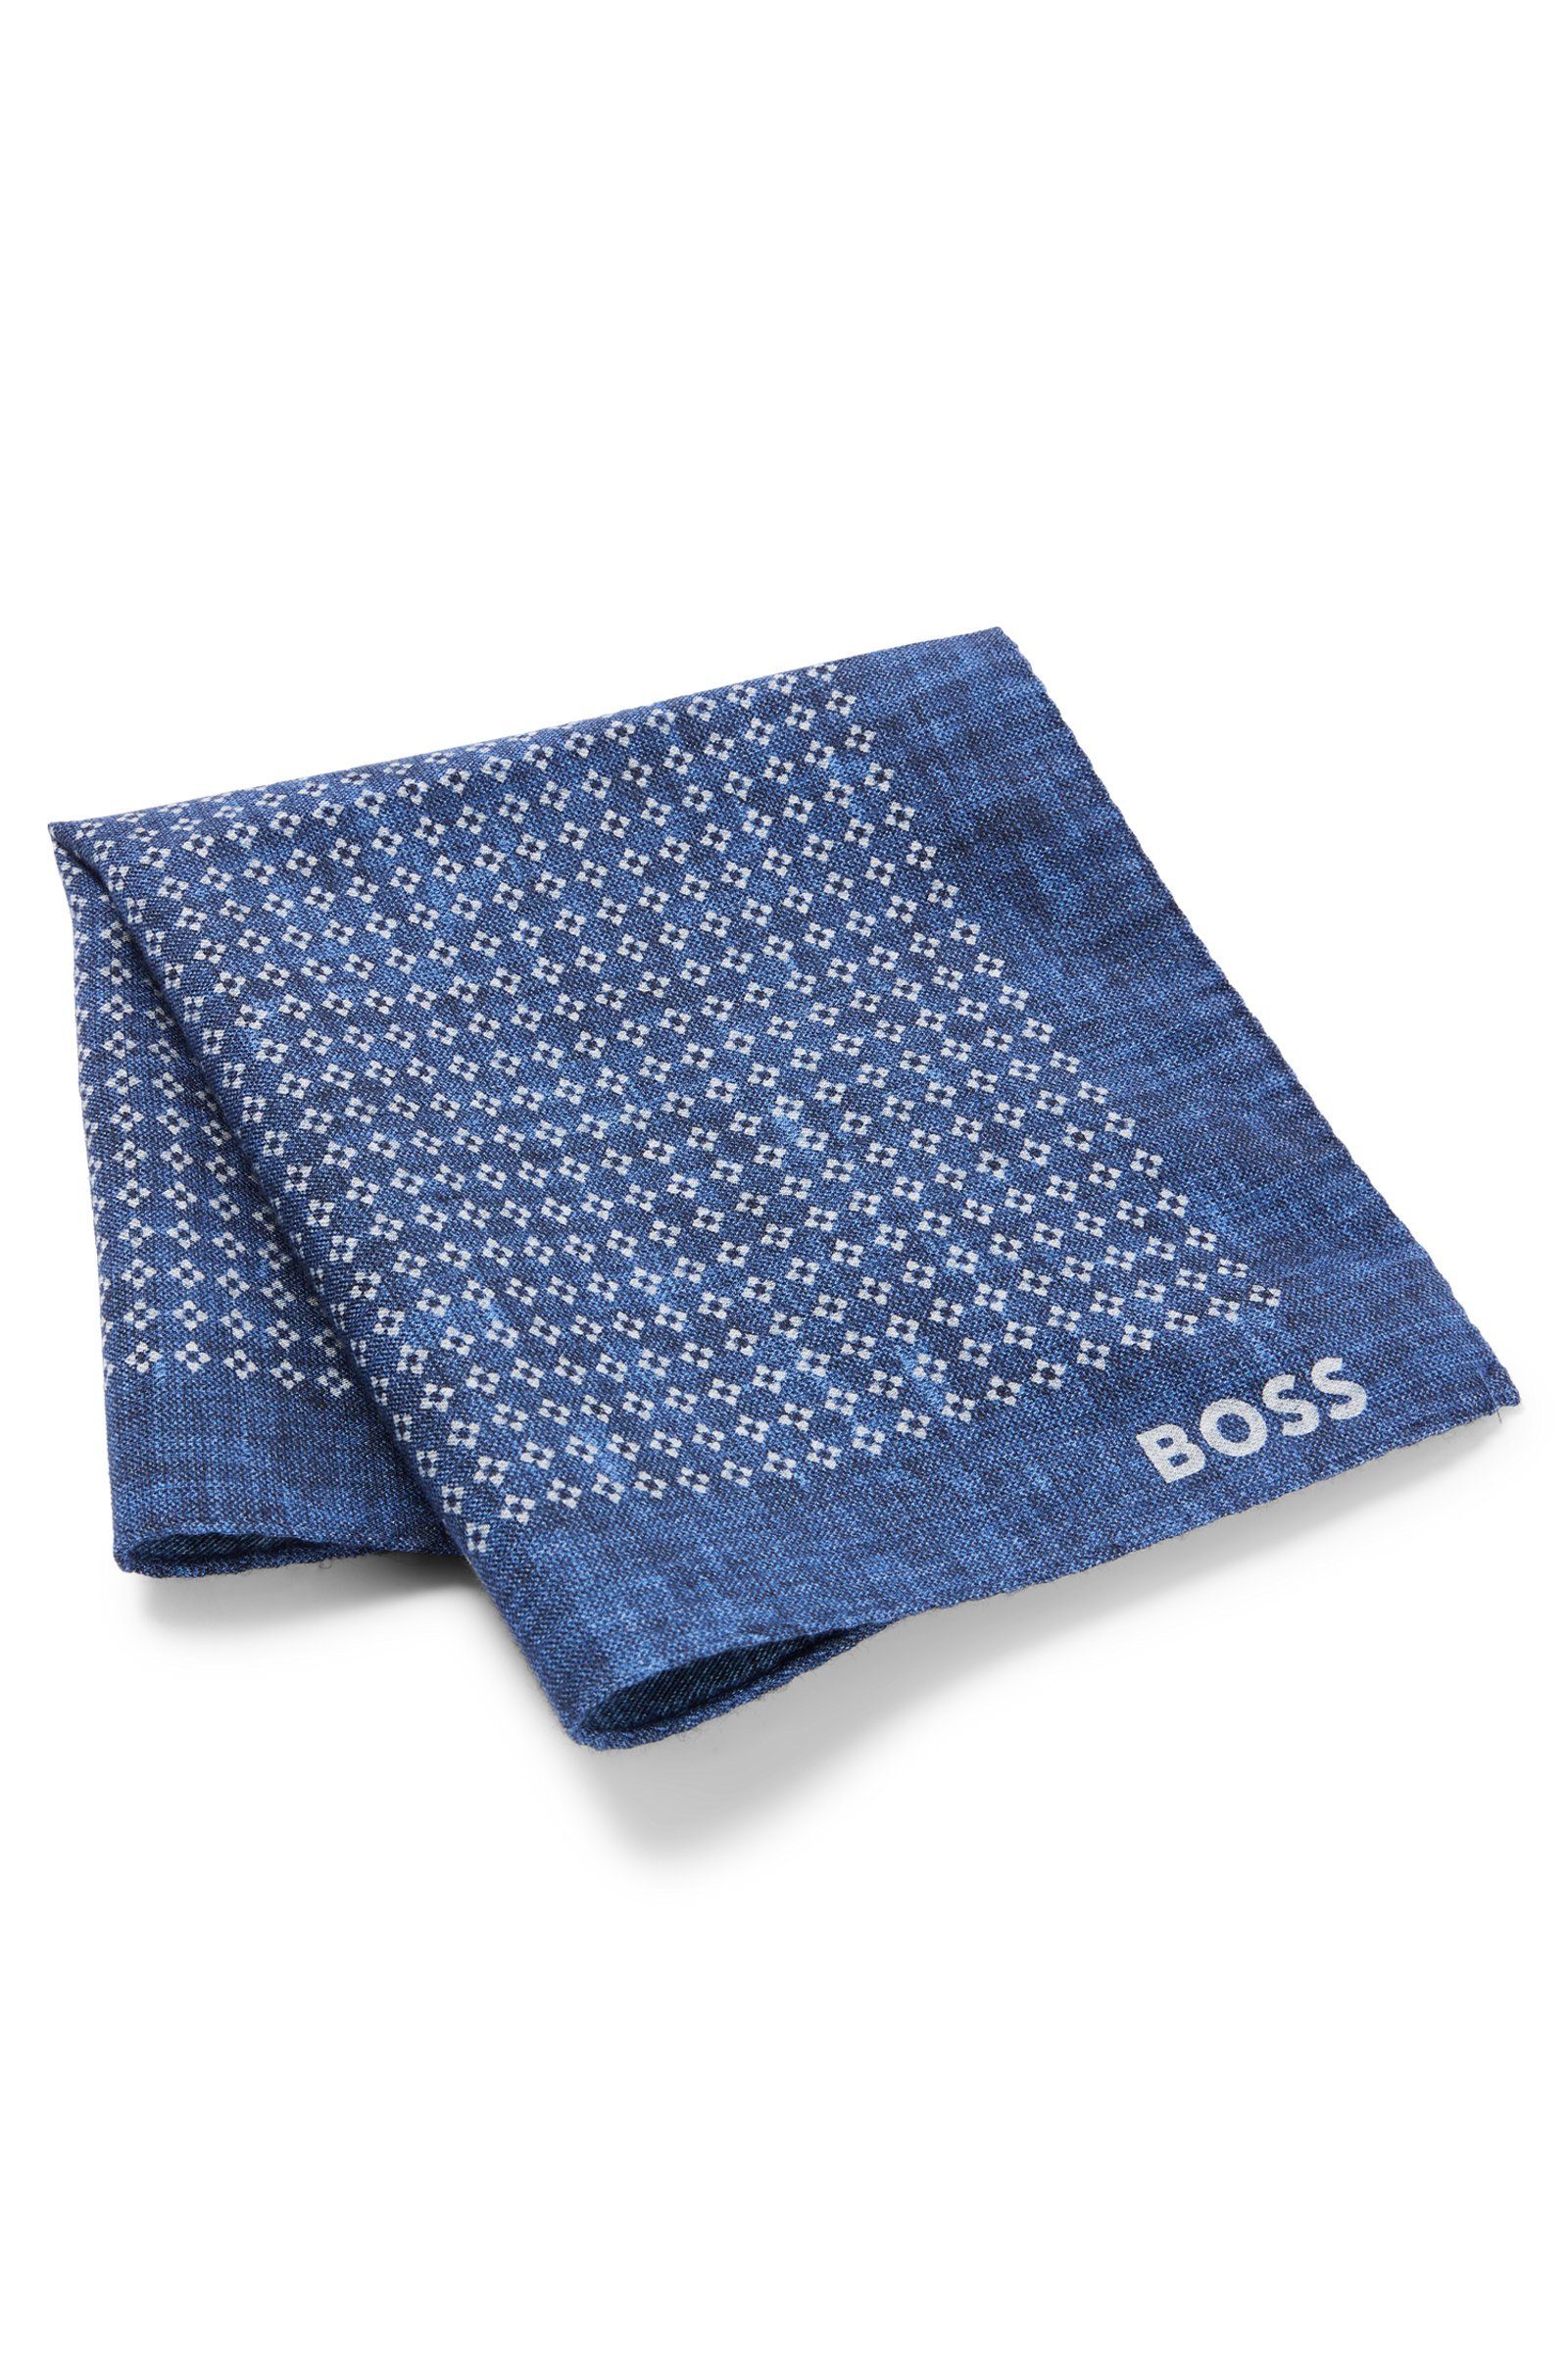 BOSS Krawatte H-POCKET SQ-222 (476) Blau (keine Angabe)